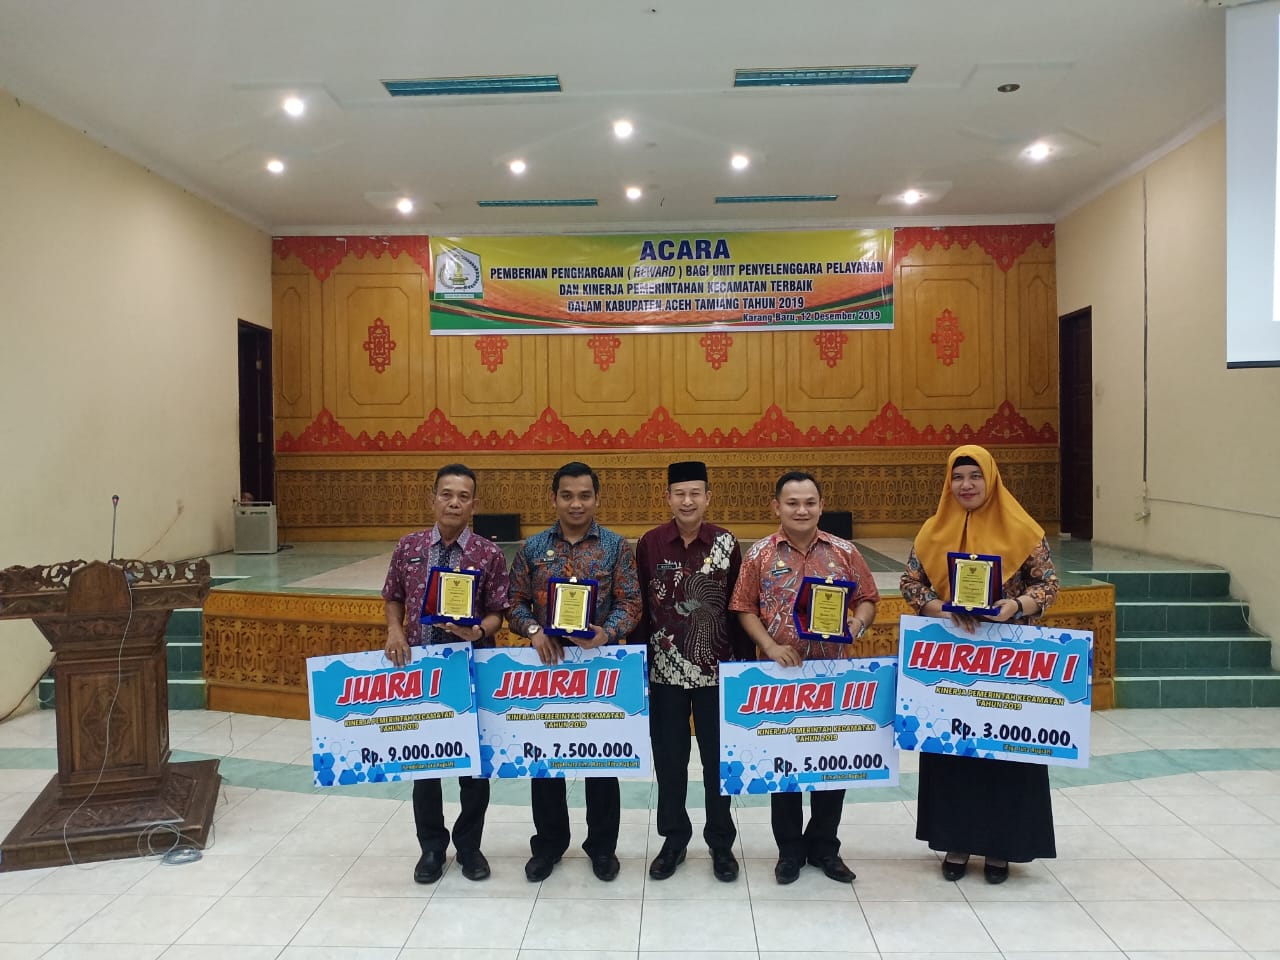 Kecamatan Rantau Meraih Juara 1 Evaluasi Kinerja Kecamatan (EKK) dan Harapan 1 Pelayanan Administrasi Terpadu Kecamatan (PATEN)